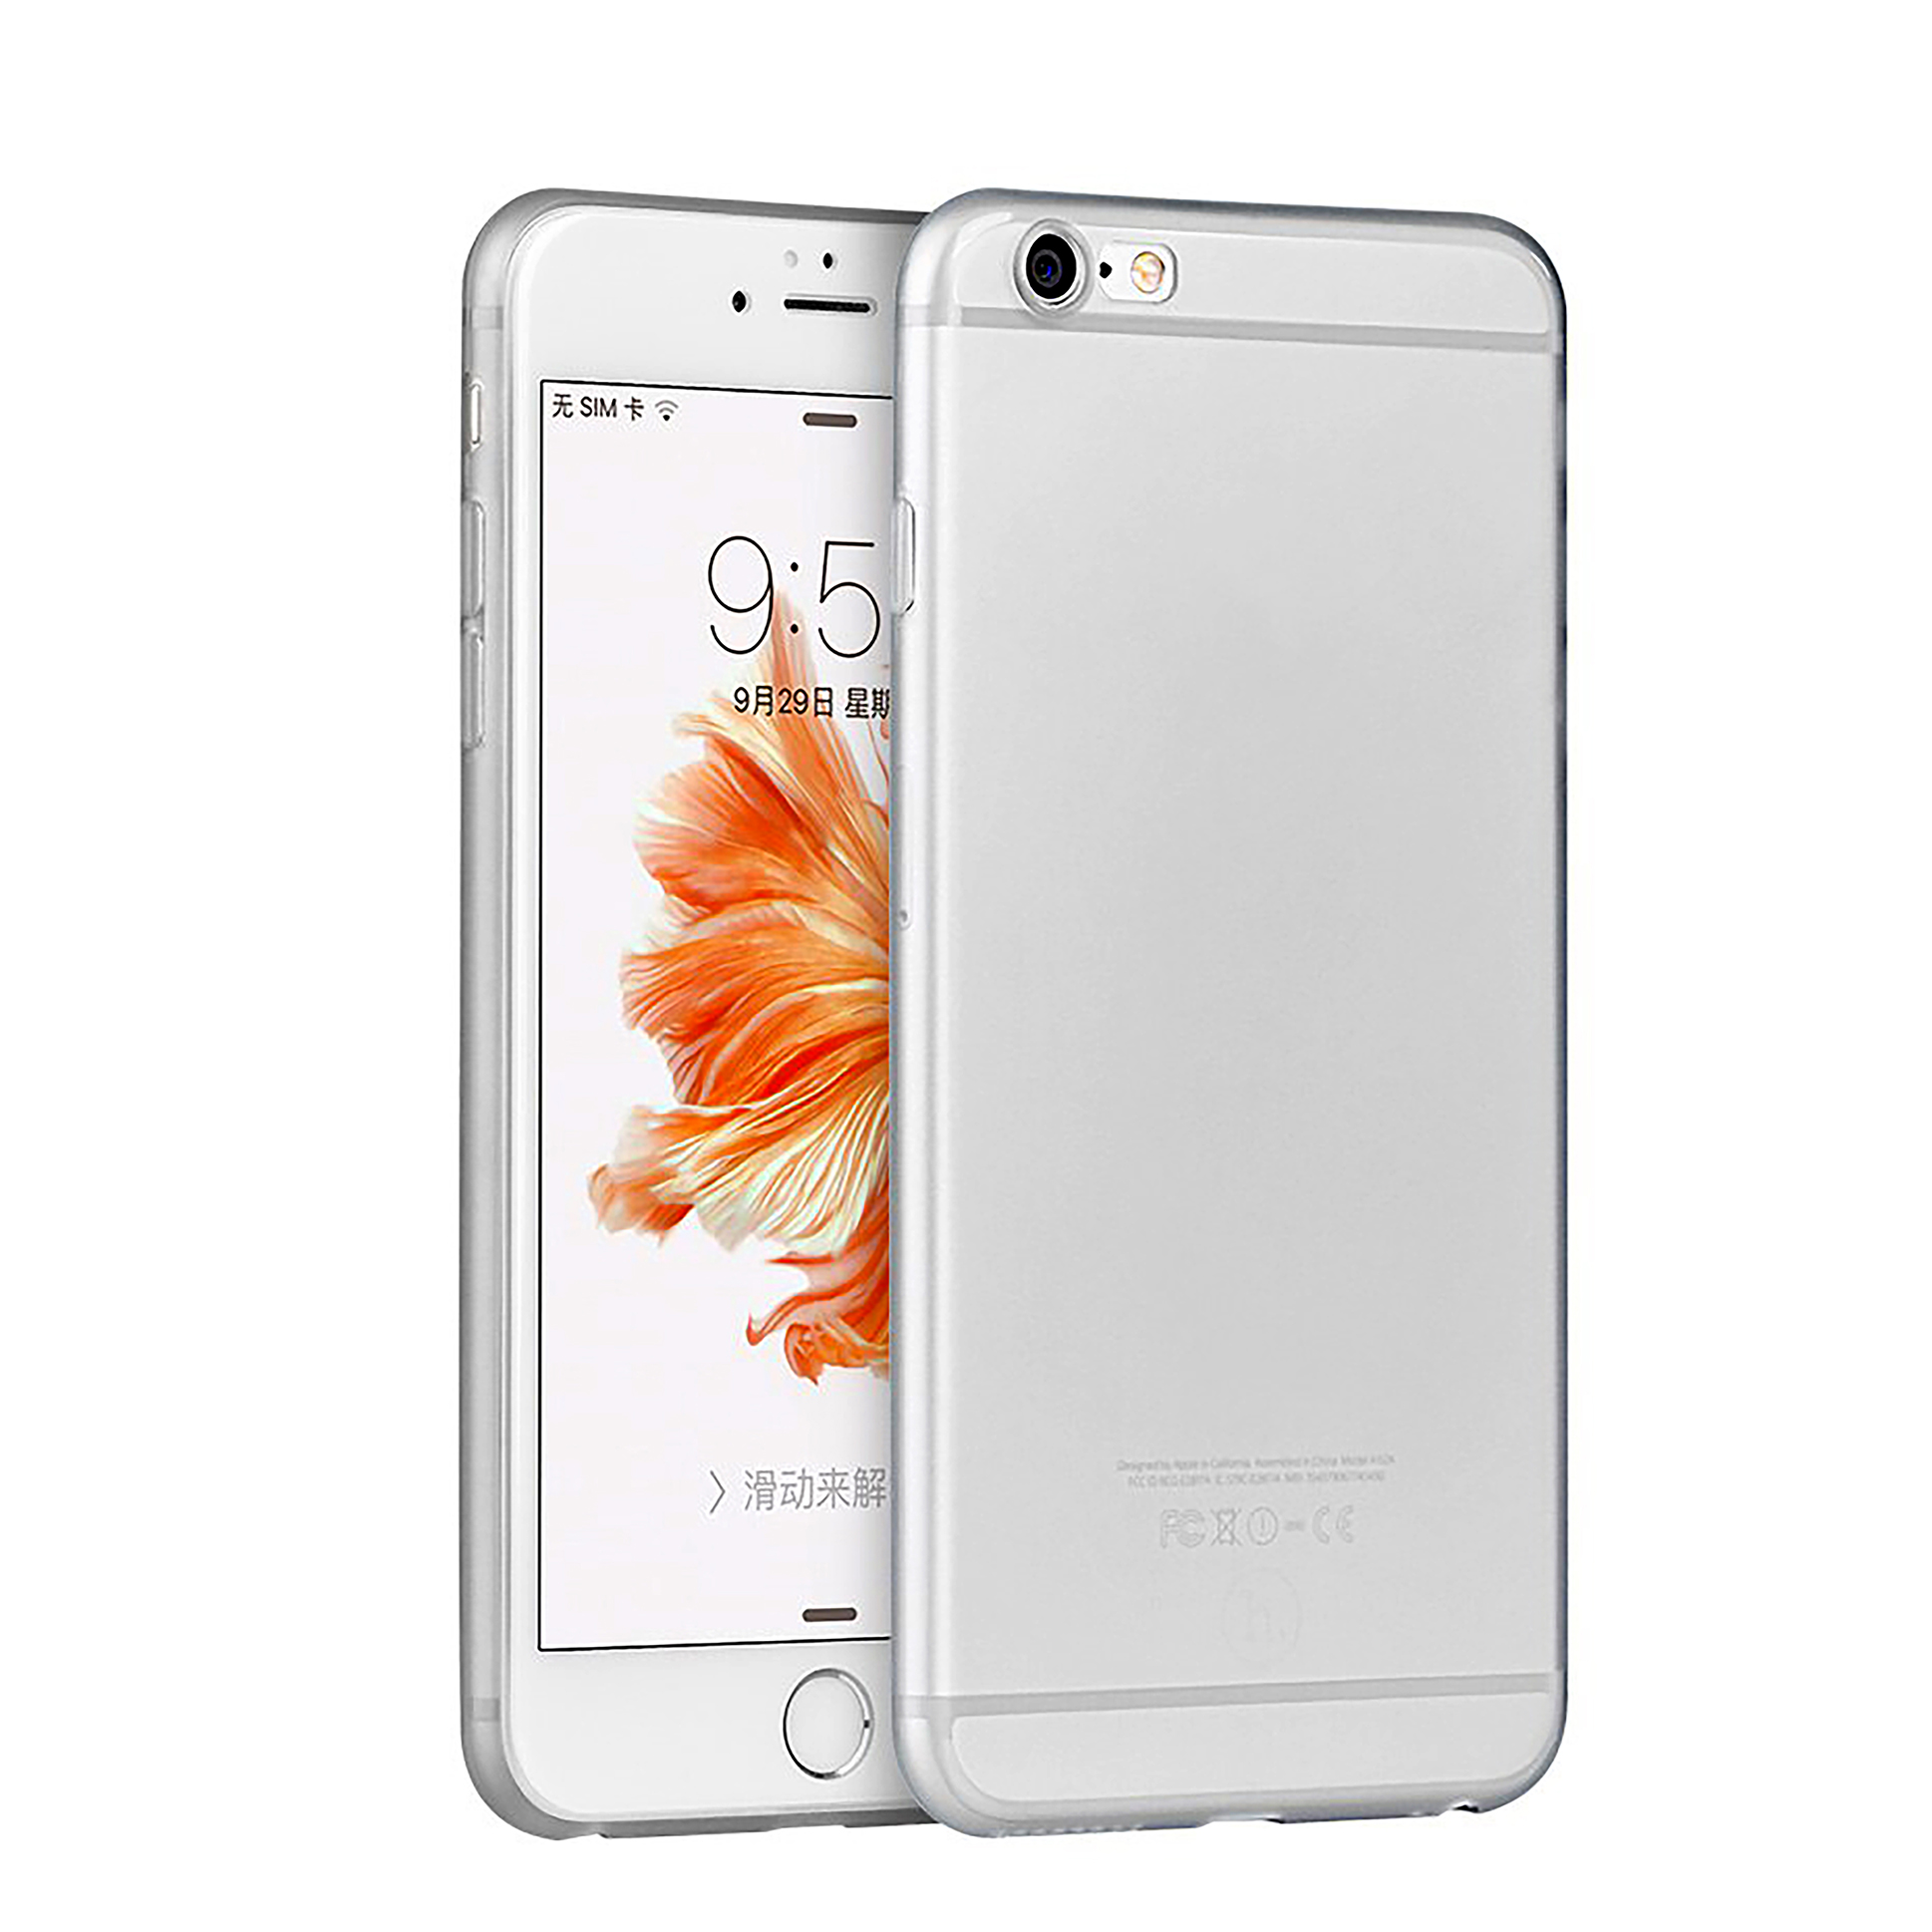 کاور هوکو مدل Ultra thin مناسب برای گوشی موبایل اپل iPhone 6 plus / 6s plus